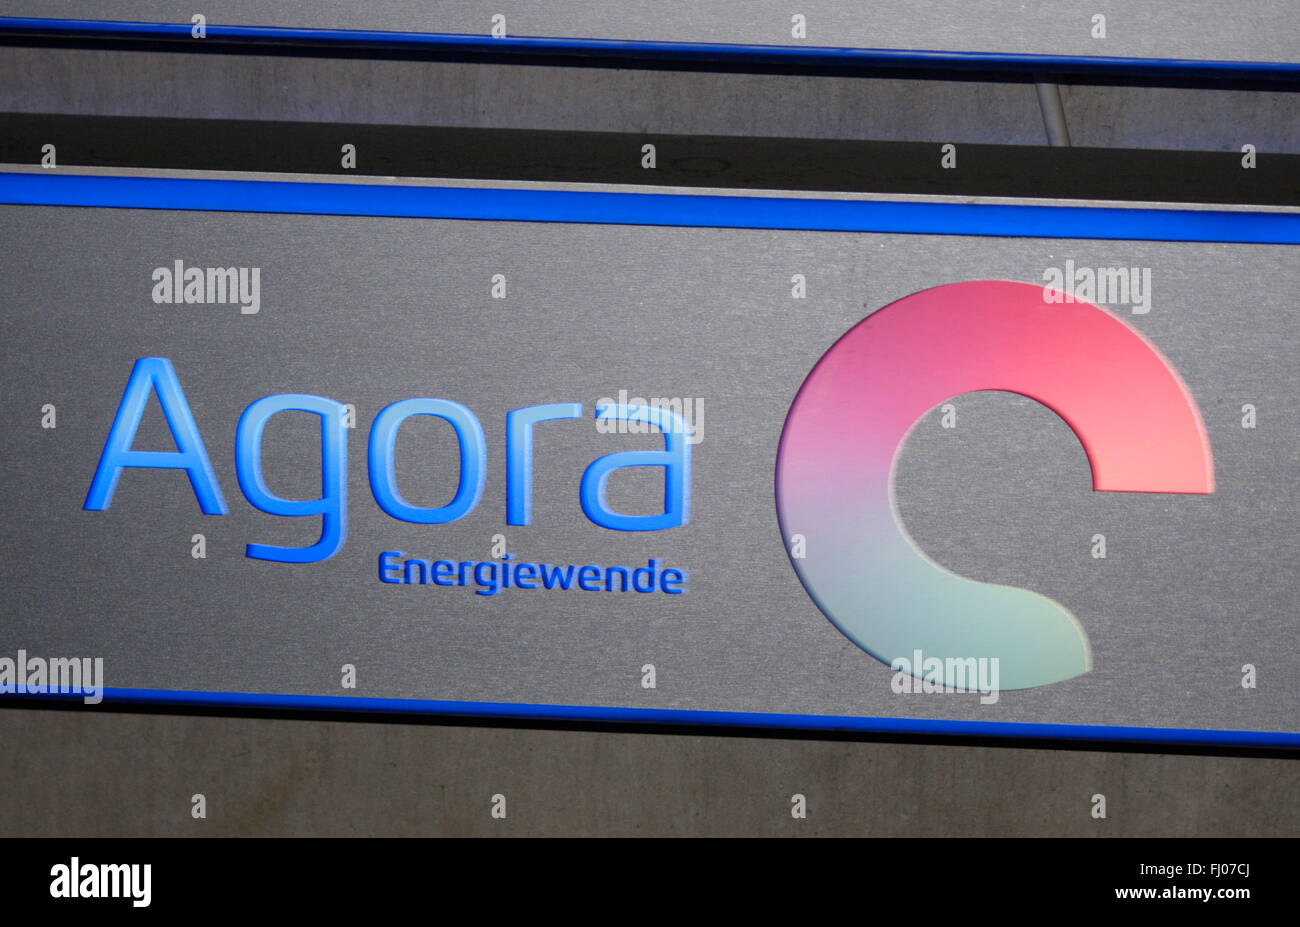 Energiewende Markenname: "Ágora", de Berlín. Foto de stock